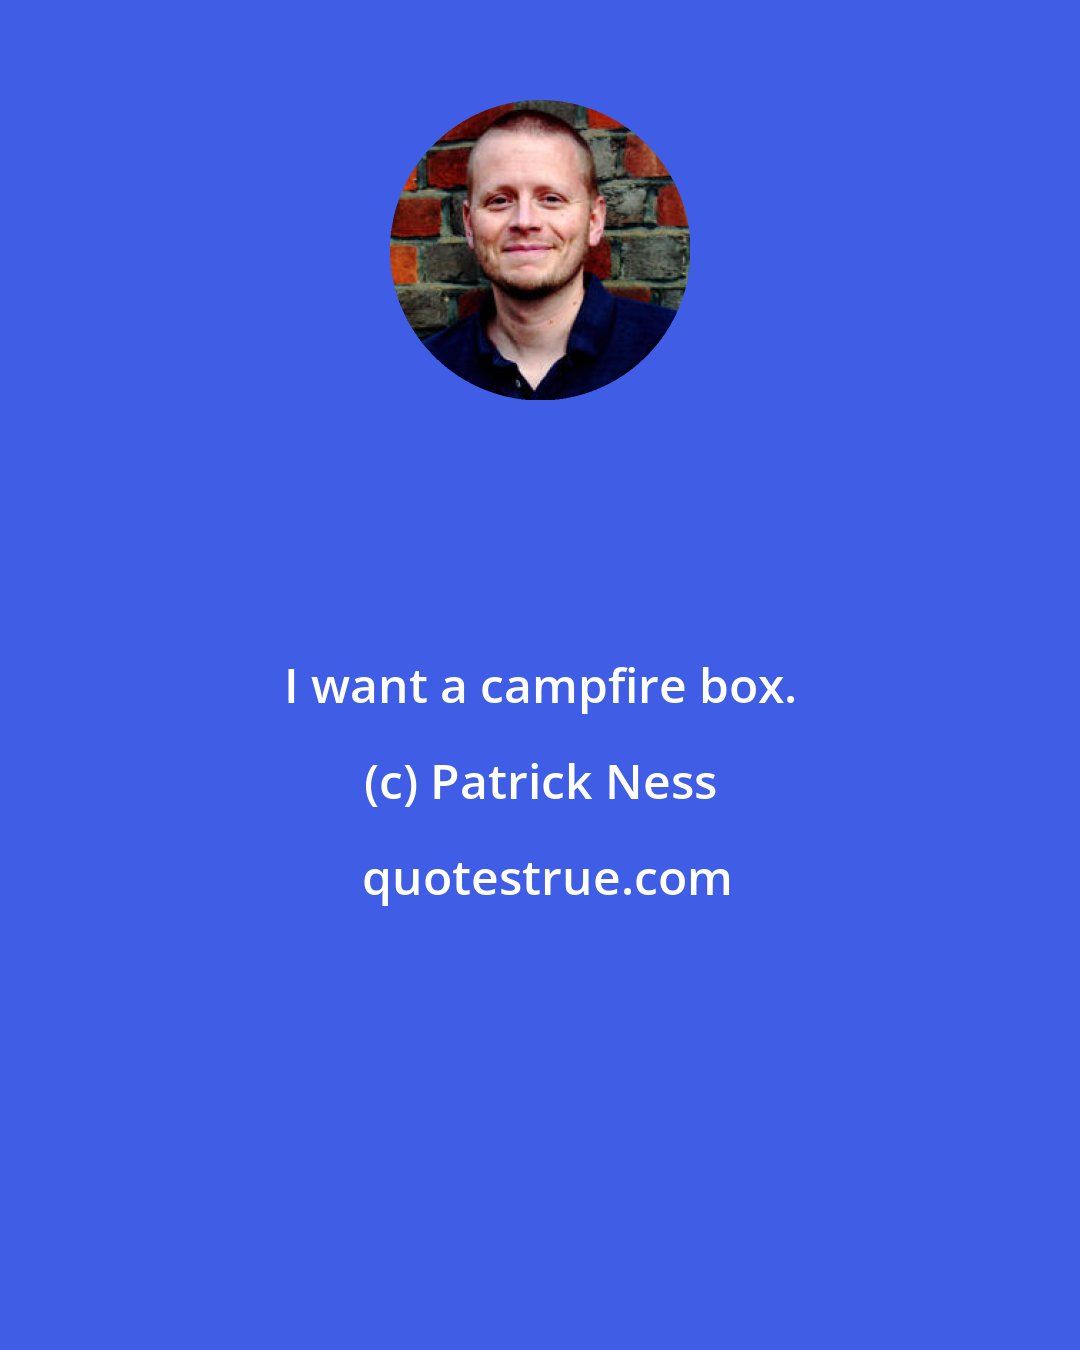 Patrick Ness: I want a campfire box.